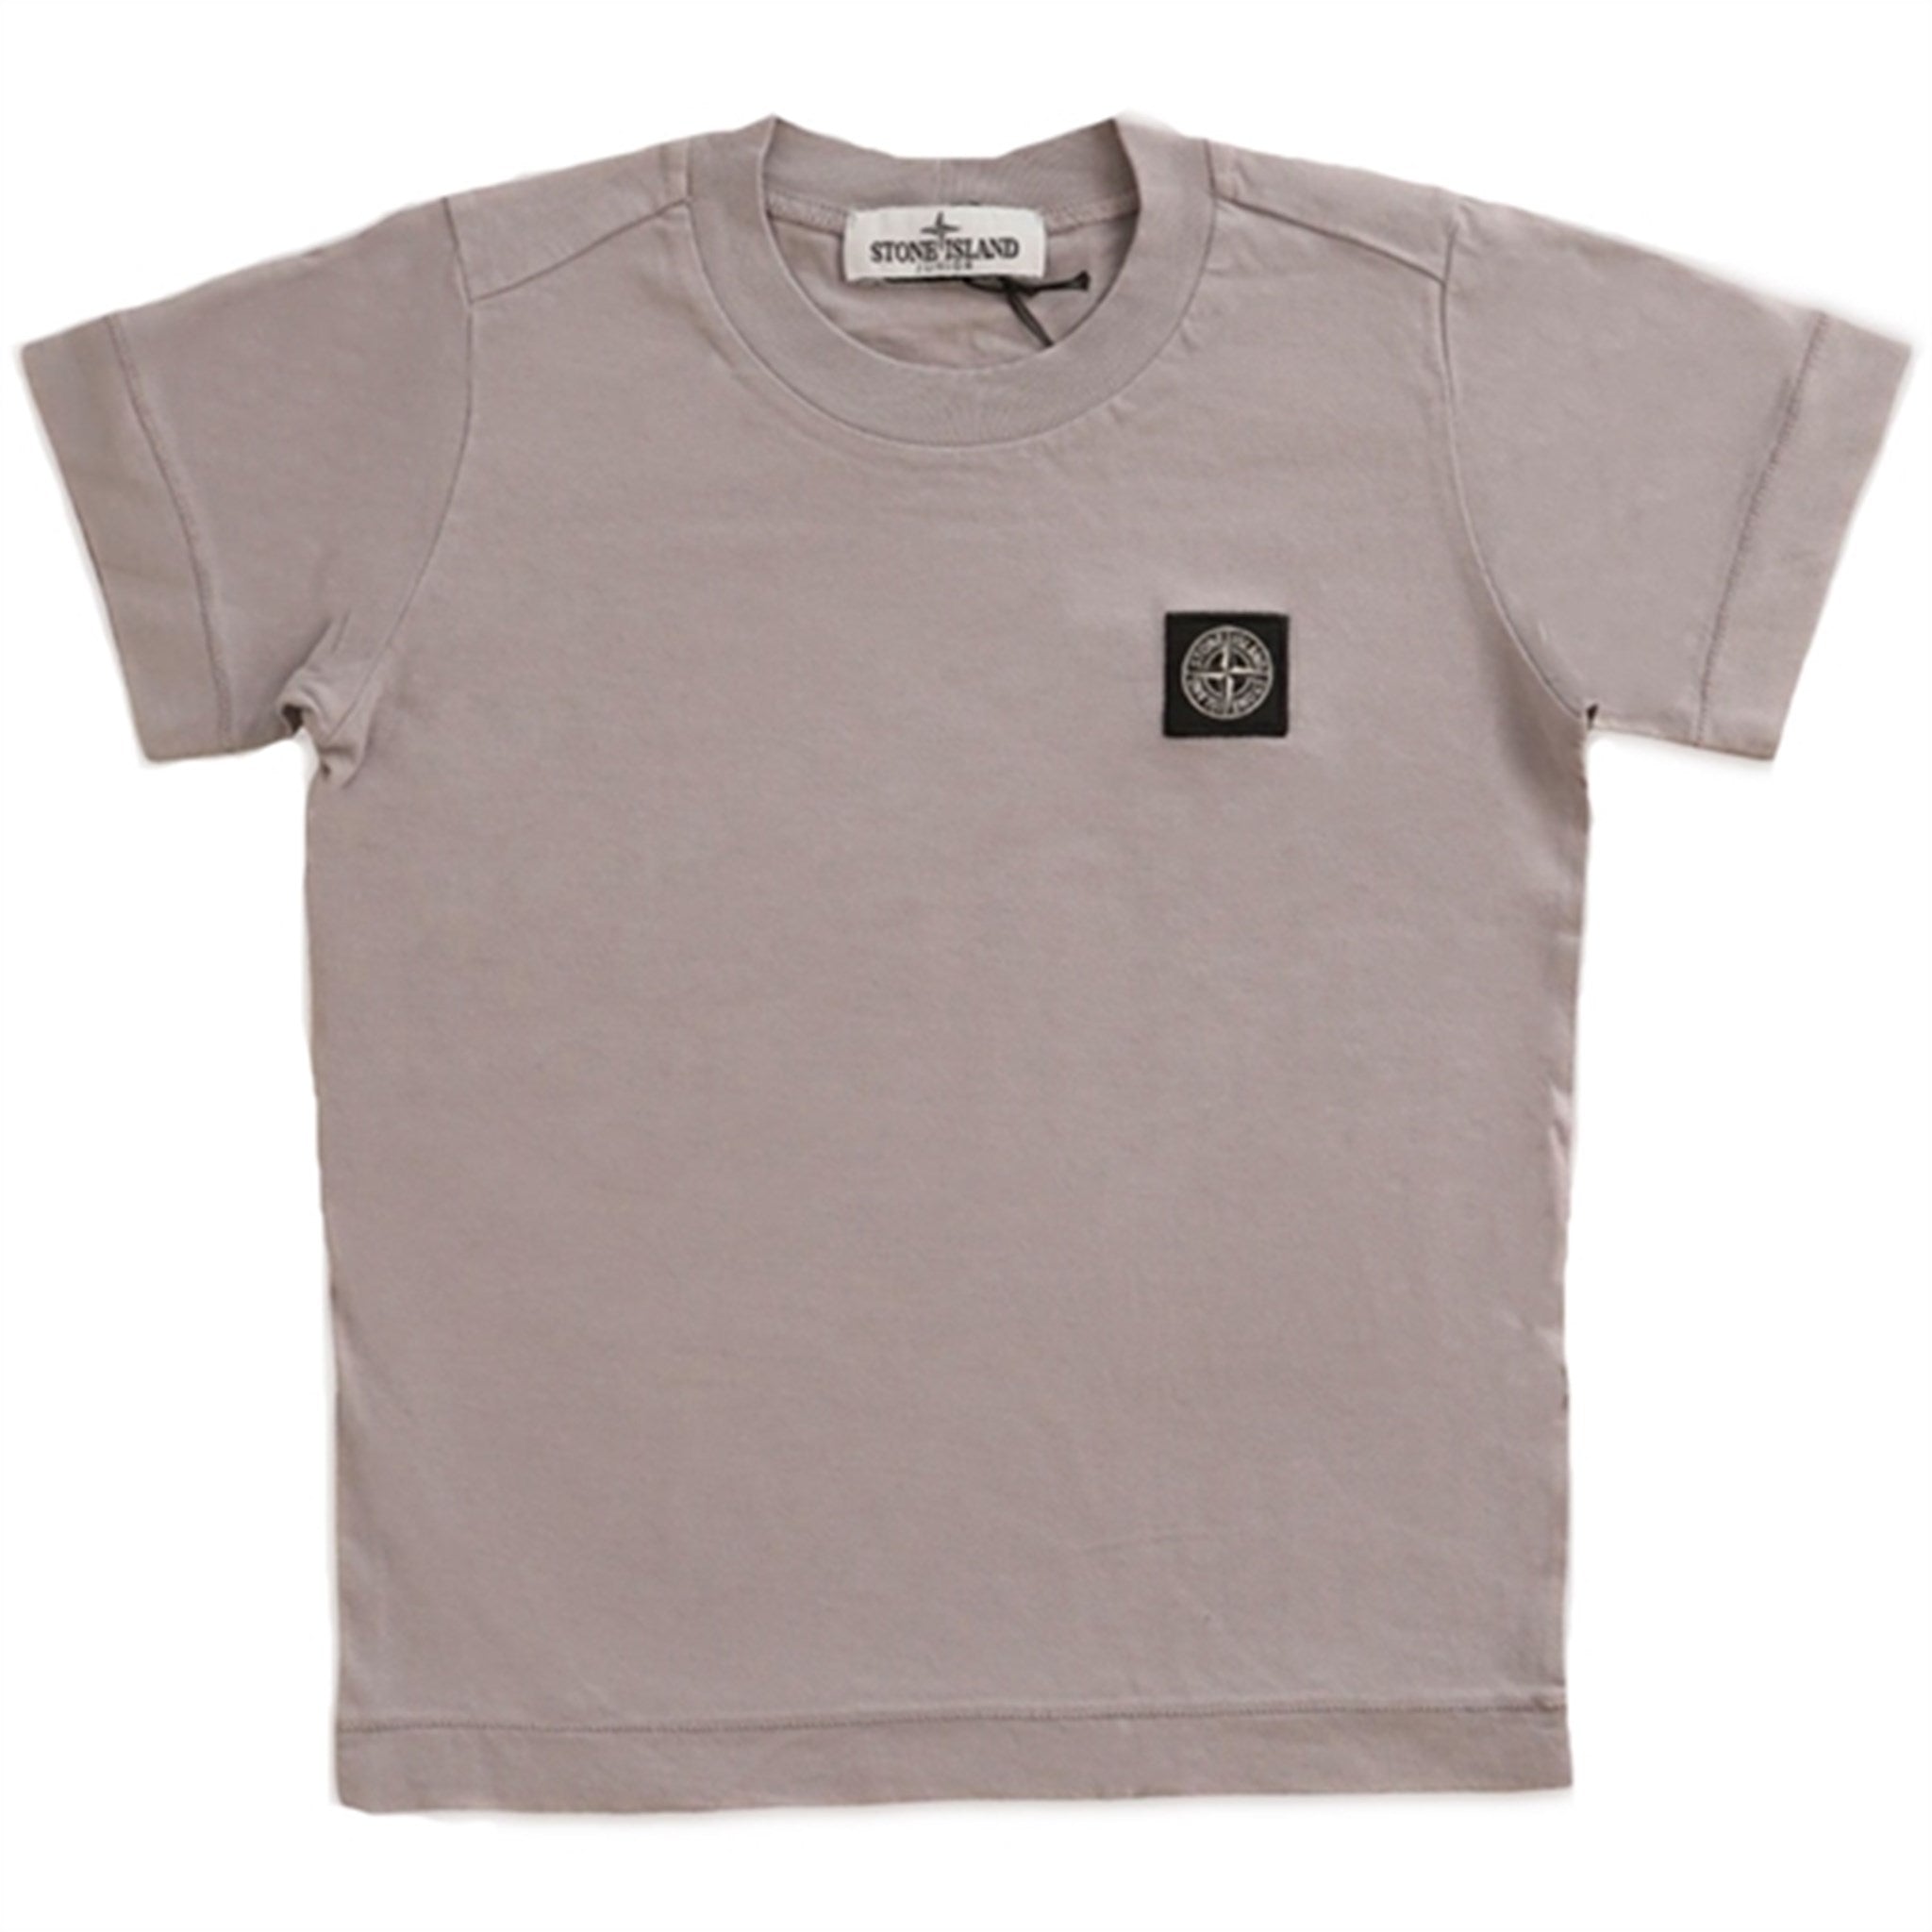 Stone Island T-Shirt Dust Grey